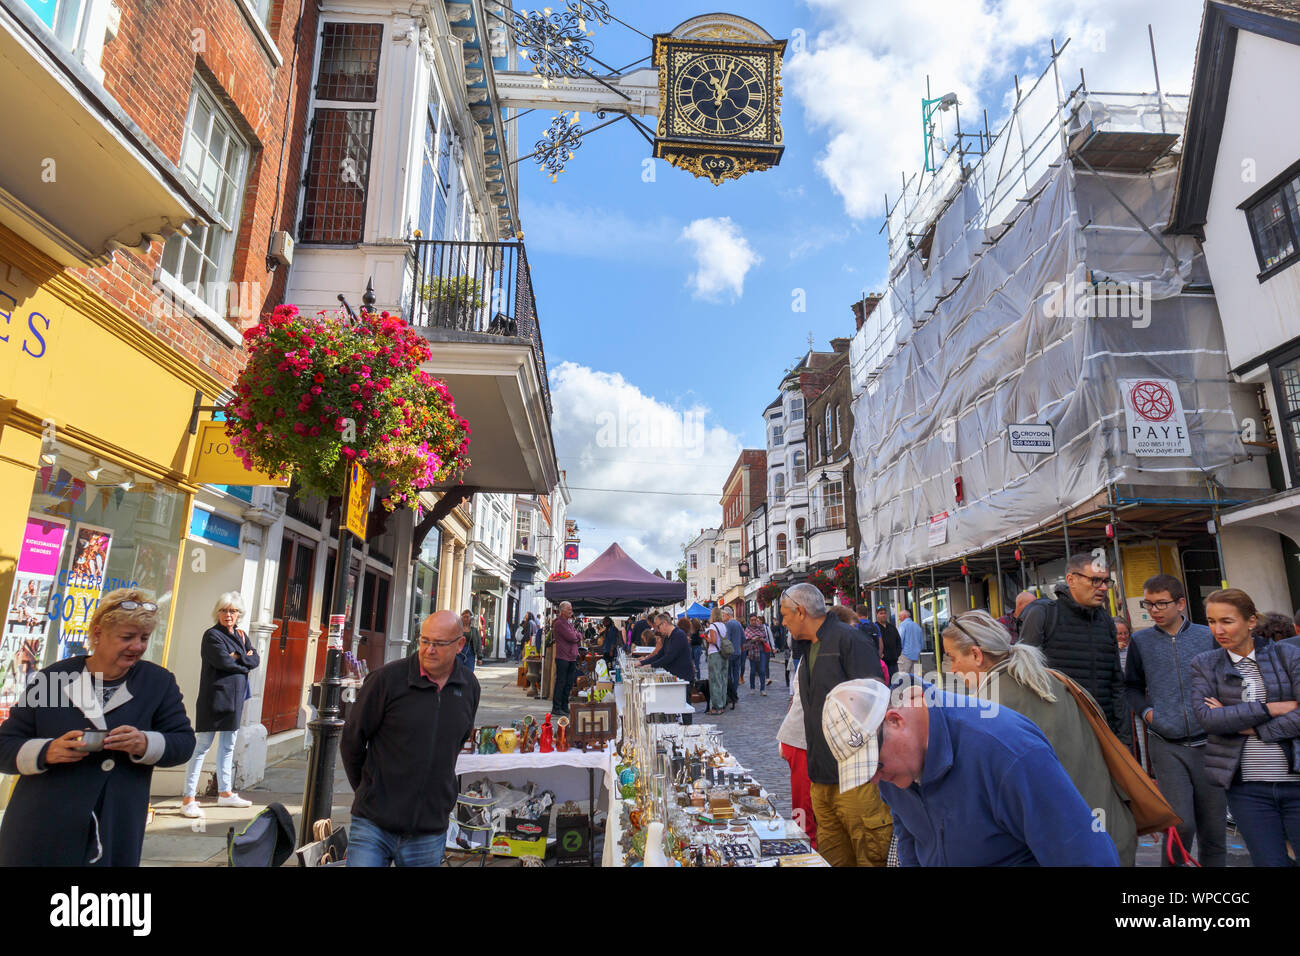 Am Straßenrand in Guildford Antike & Brocante Straße Marktstand und bis High Street, Guildford, Surrey, Südosten, England, Grossbritannien ansehen Stockfoto